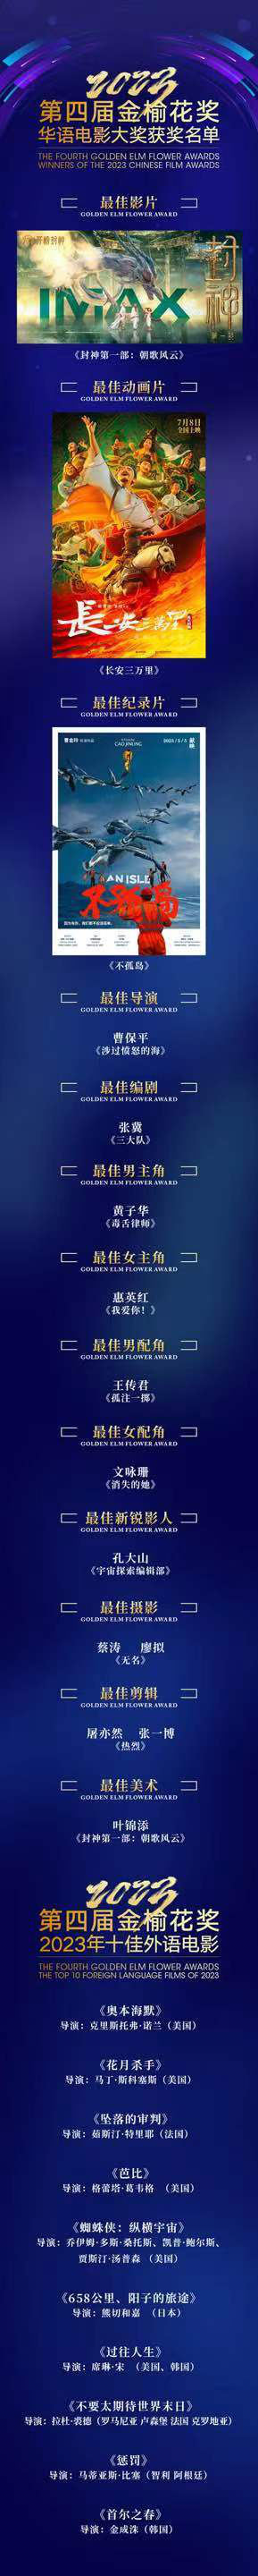 《封神第一部》斩获第四届金榆花奖最佳影片，黄子华和惠英红荣膺影帝影后。